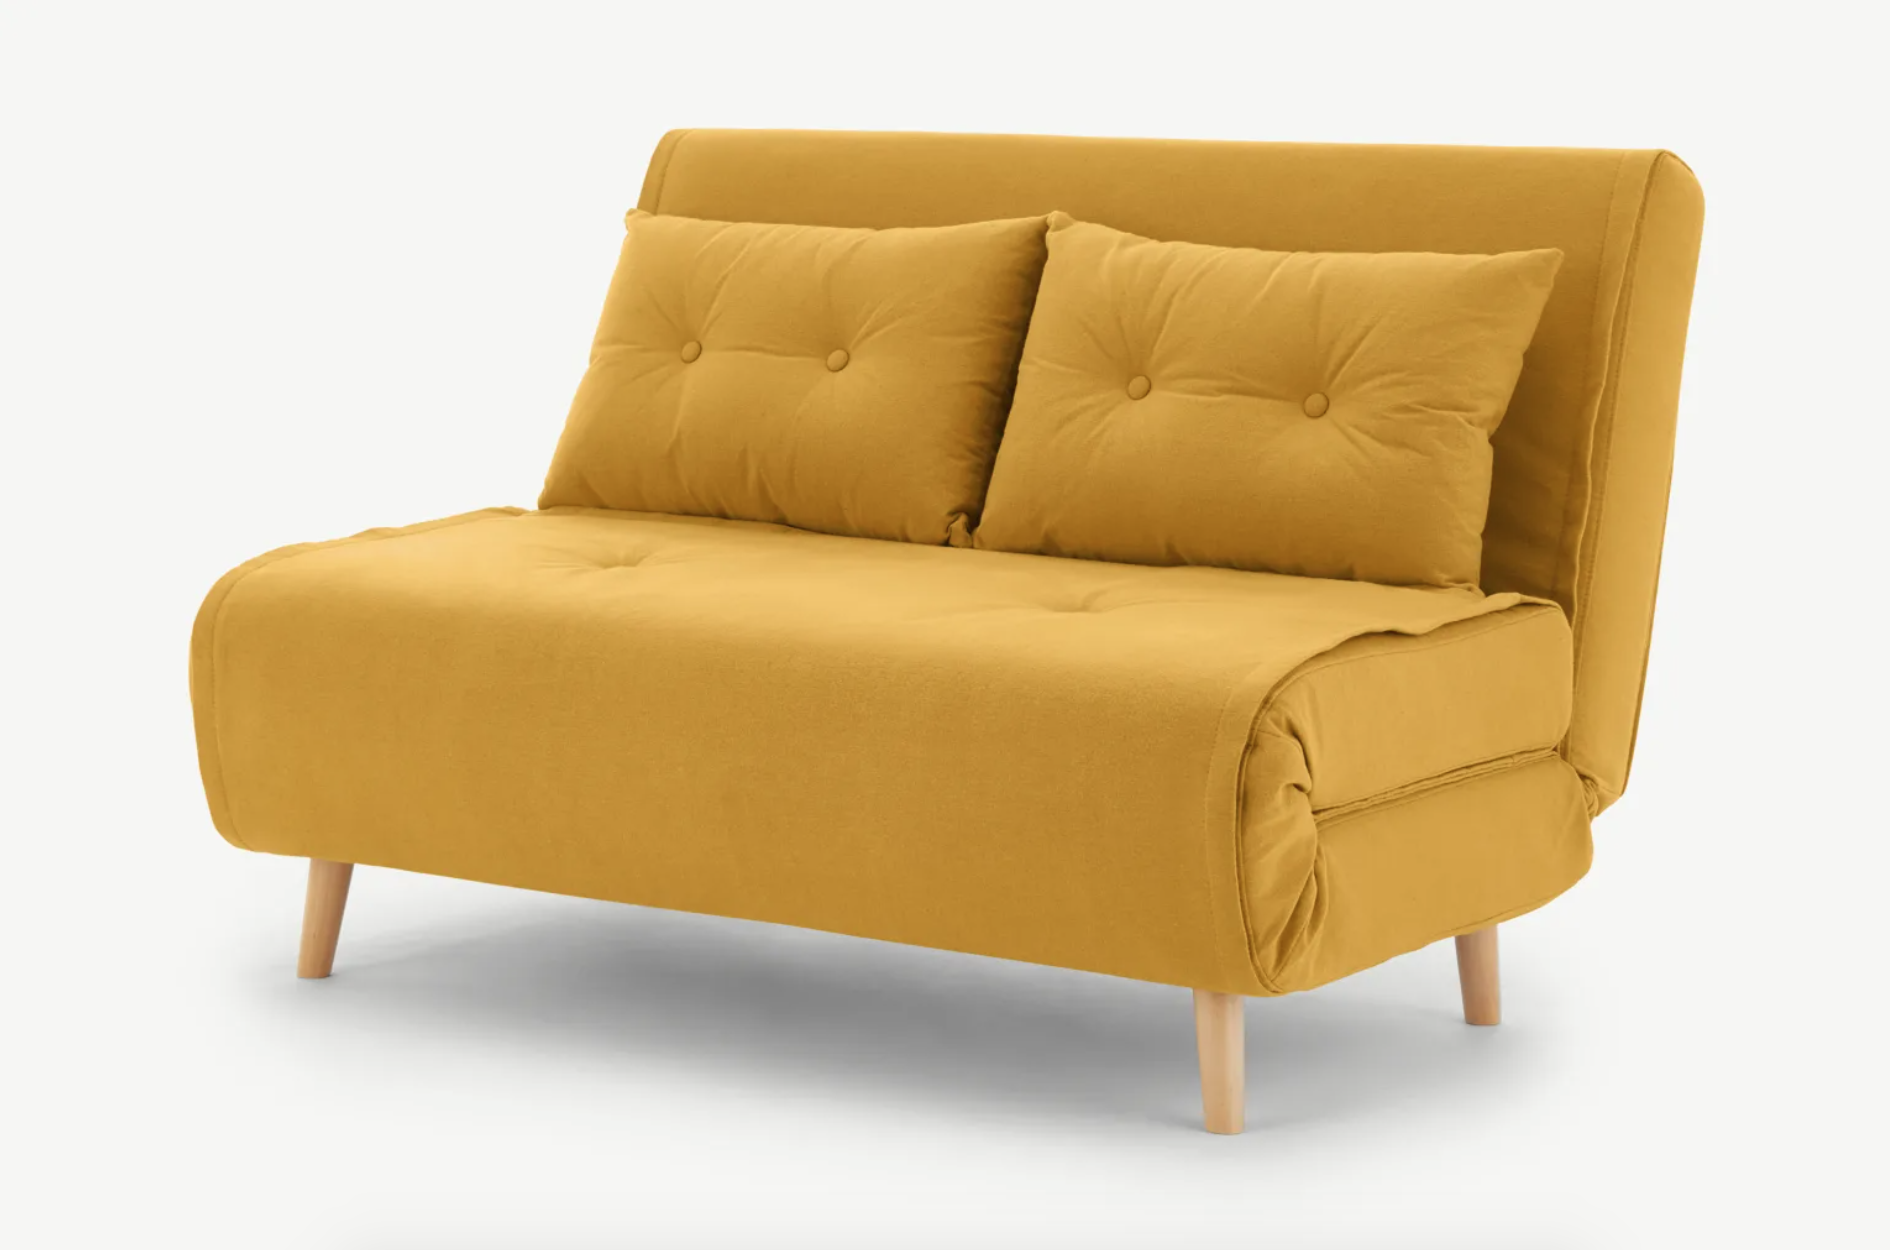 Мебель маленькие диваны. Маленький диван. Маленький диванчик. Диван желтый раскладной. Компактный диванчик.